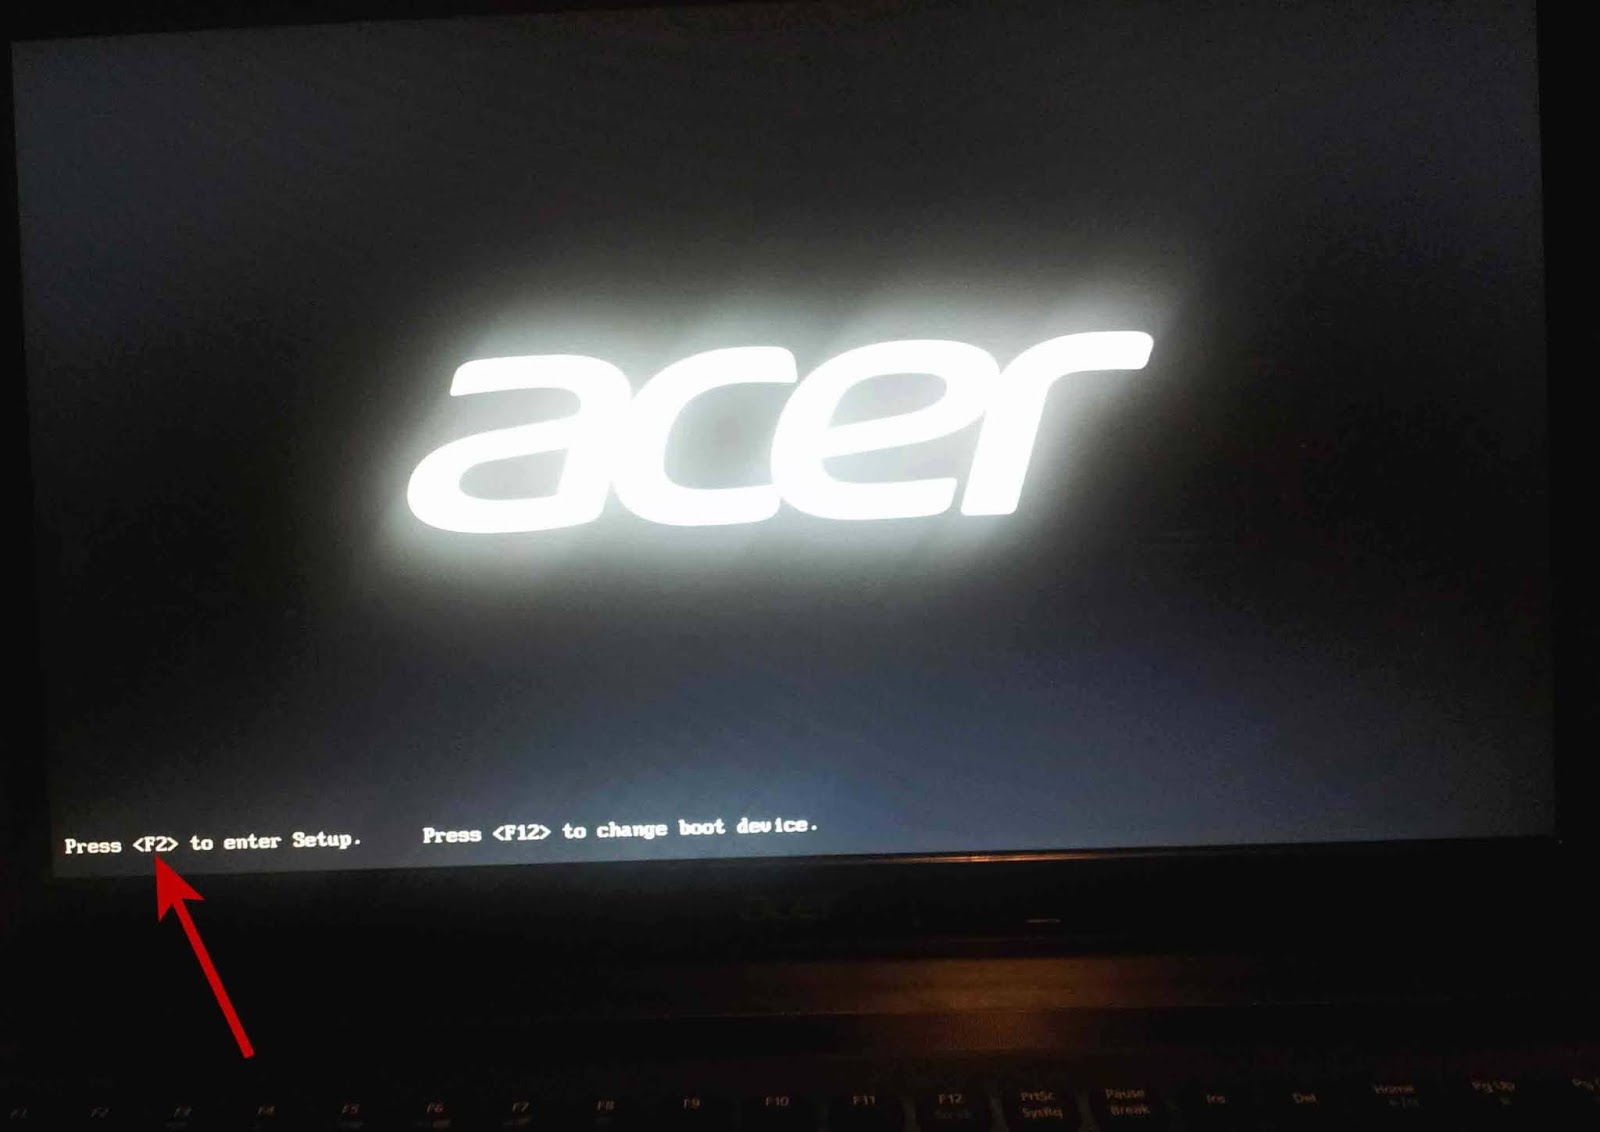 F2 enter. Press f2 to enter Setup ноутбука Acer. Press f12. Press to enter Setup. Надпись на мониторе.